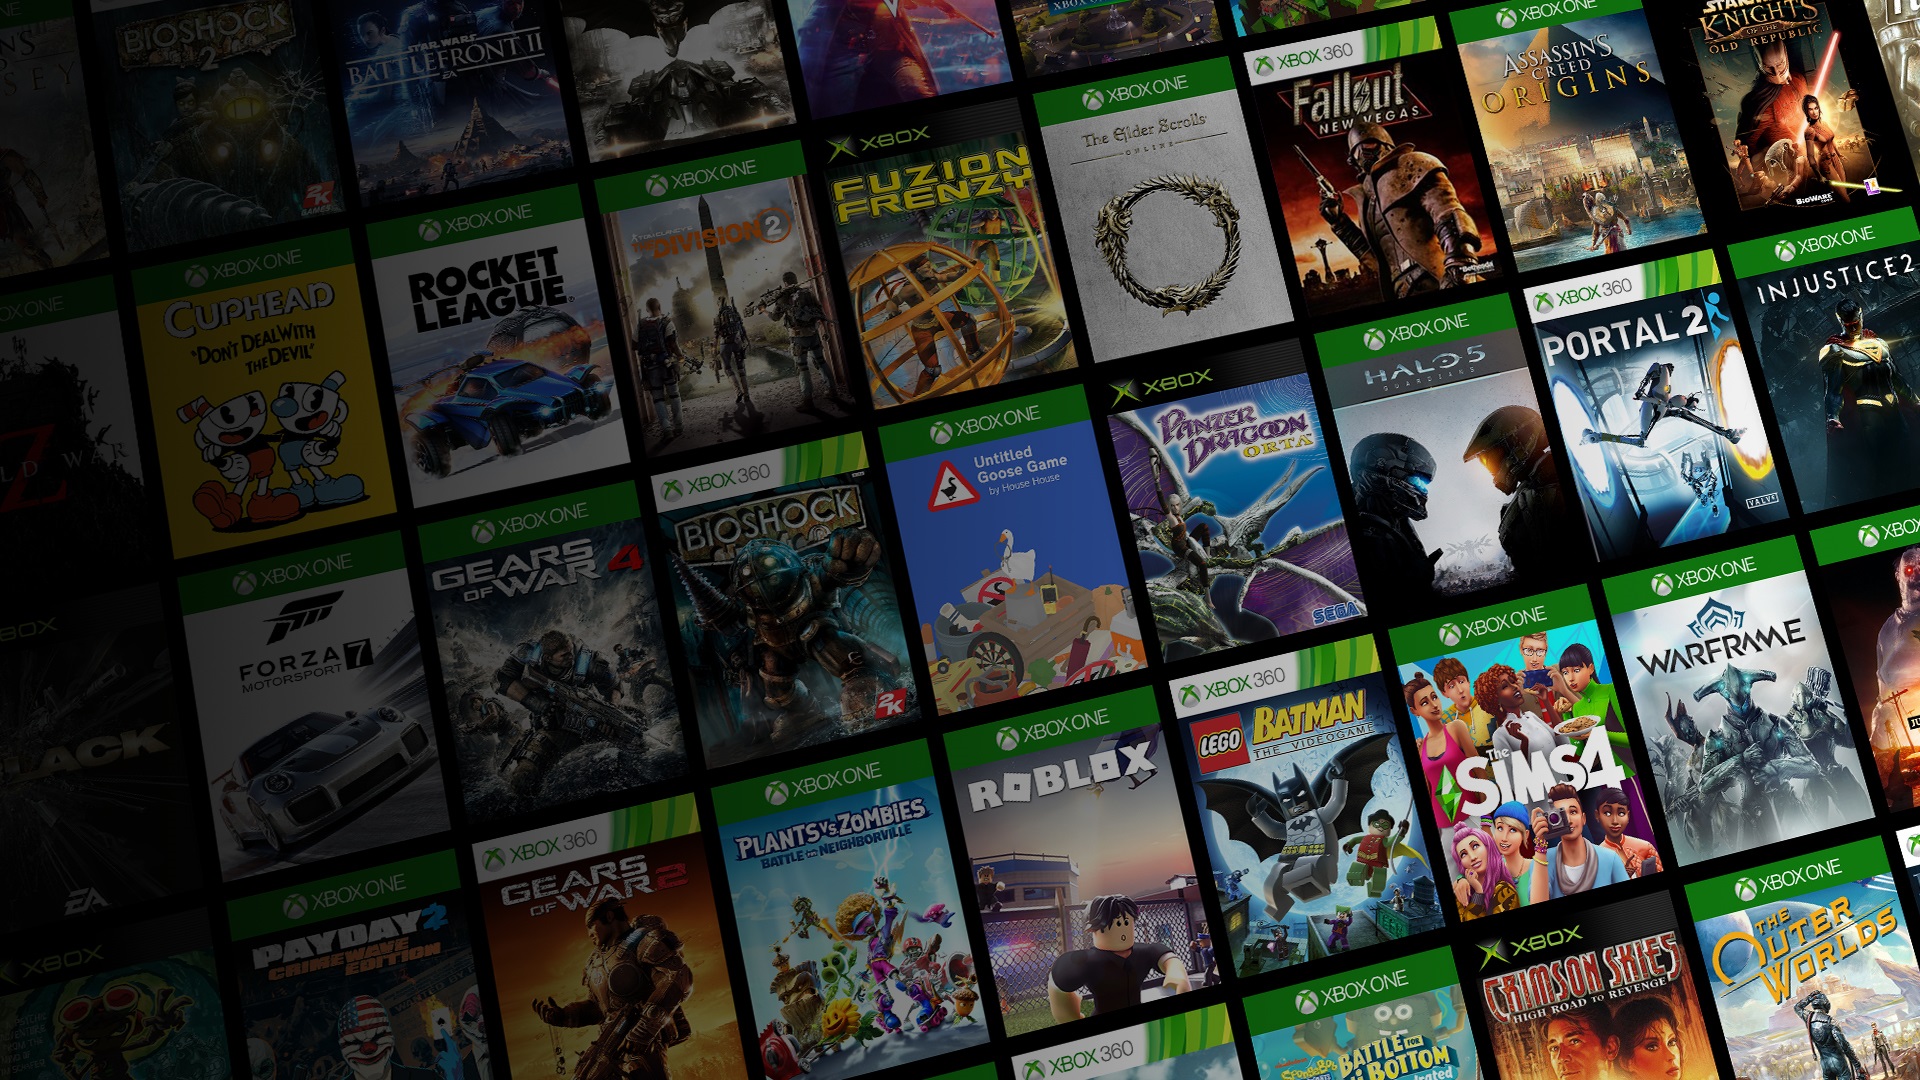 Si eres nuevo en Xbox, comienza tu aventura con estos 7 juegos gratis -  Generacion Xbox